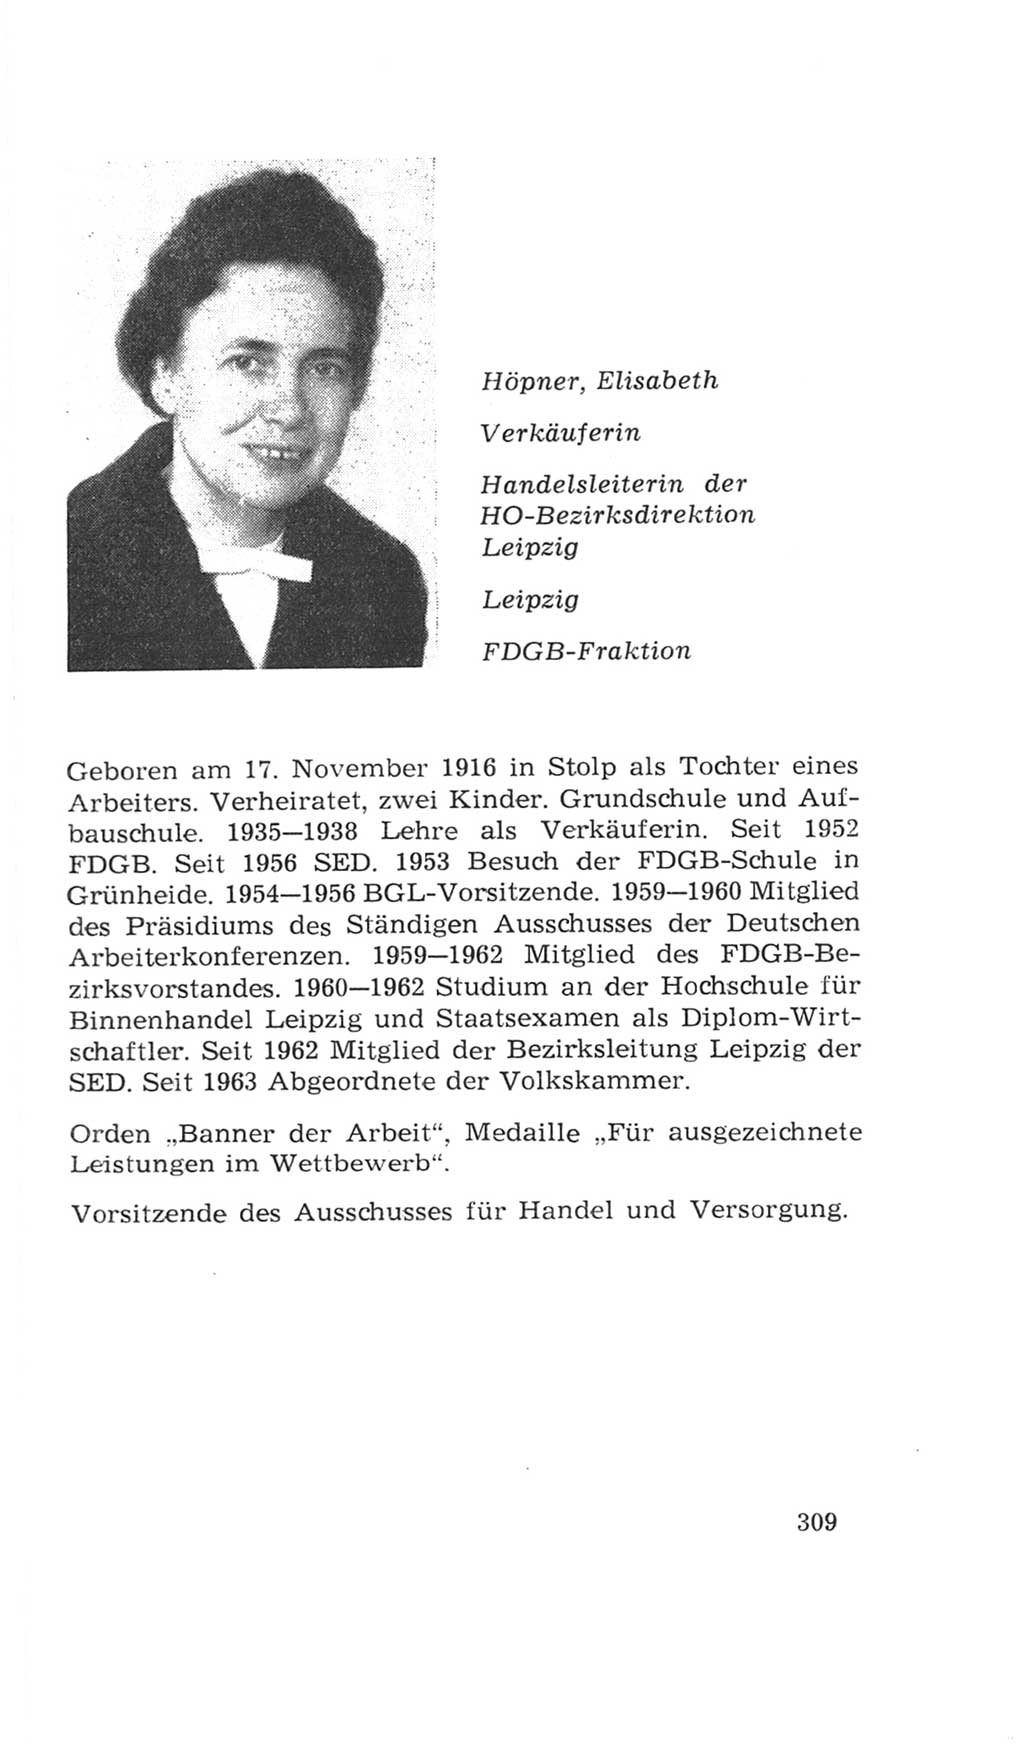 Volkskammer (VK) der Deutschen Demokratischen Republik (DDR), 4. Wahlperiode 1963-1967, Seite 309 (VK. DDR 4. WP. 1963-1967, S. 309)